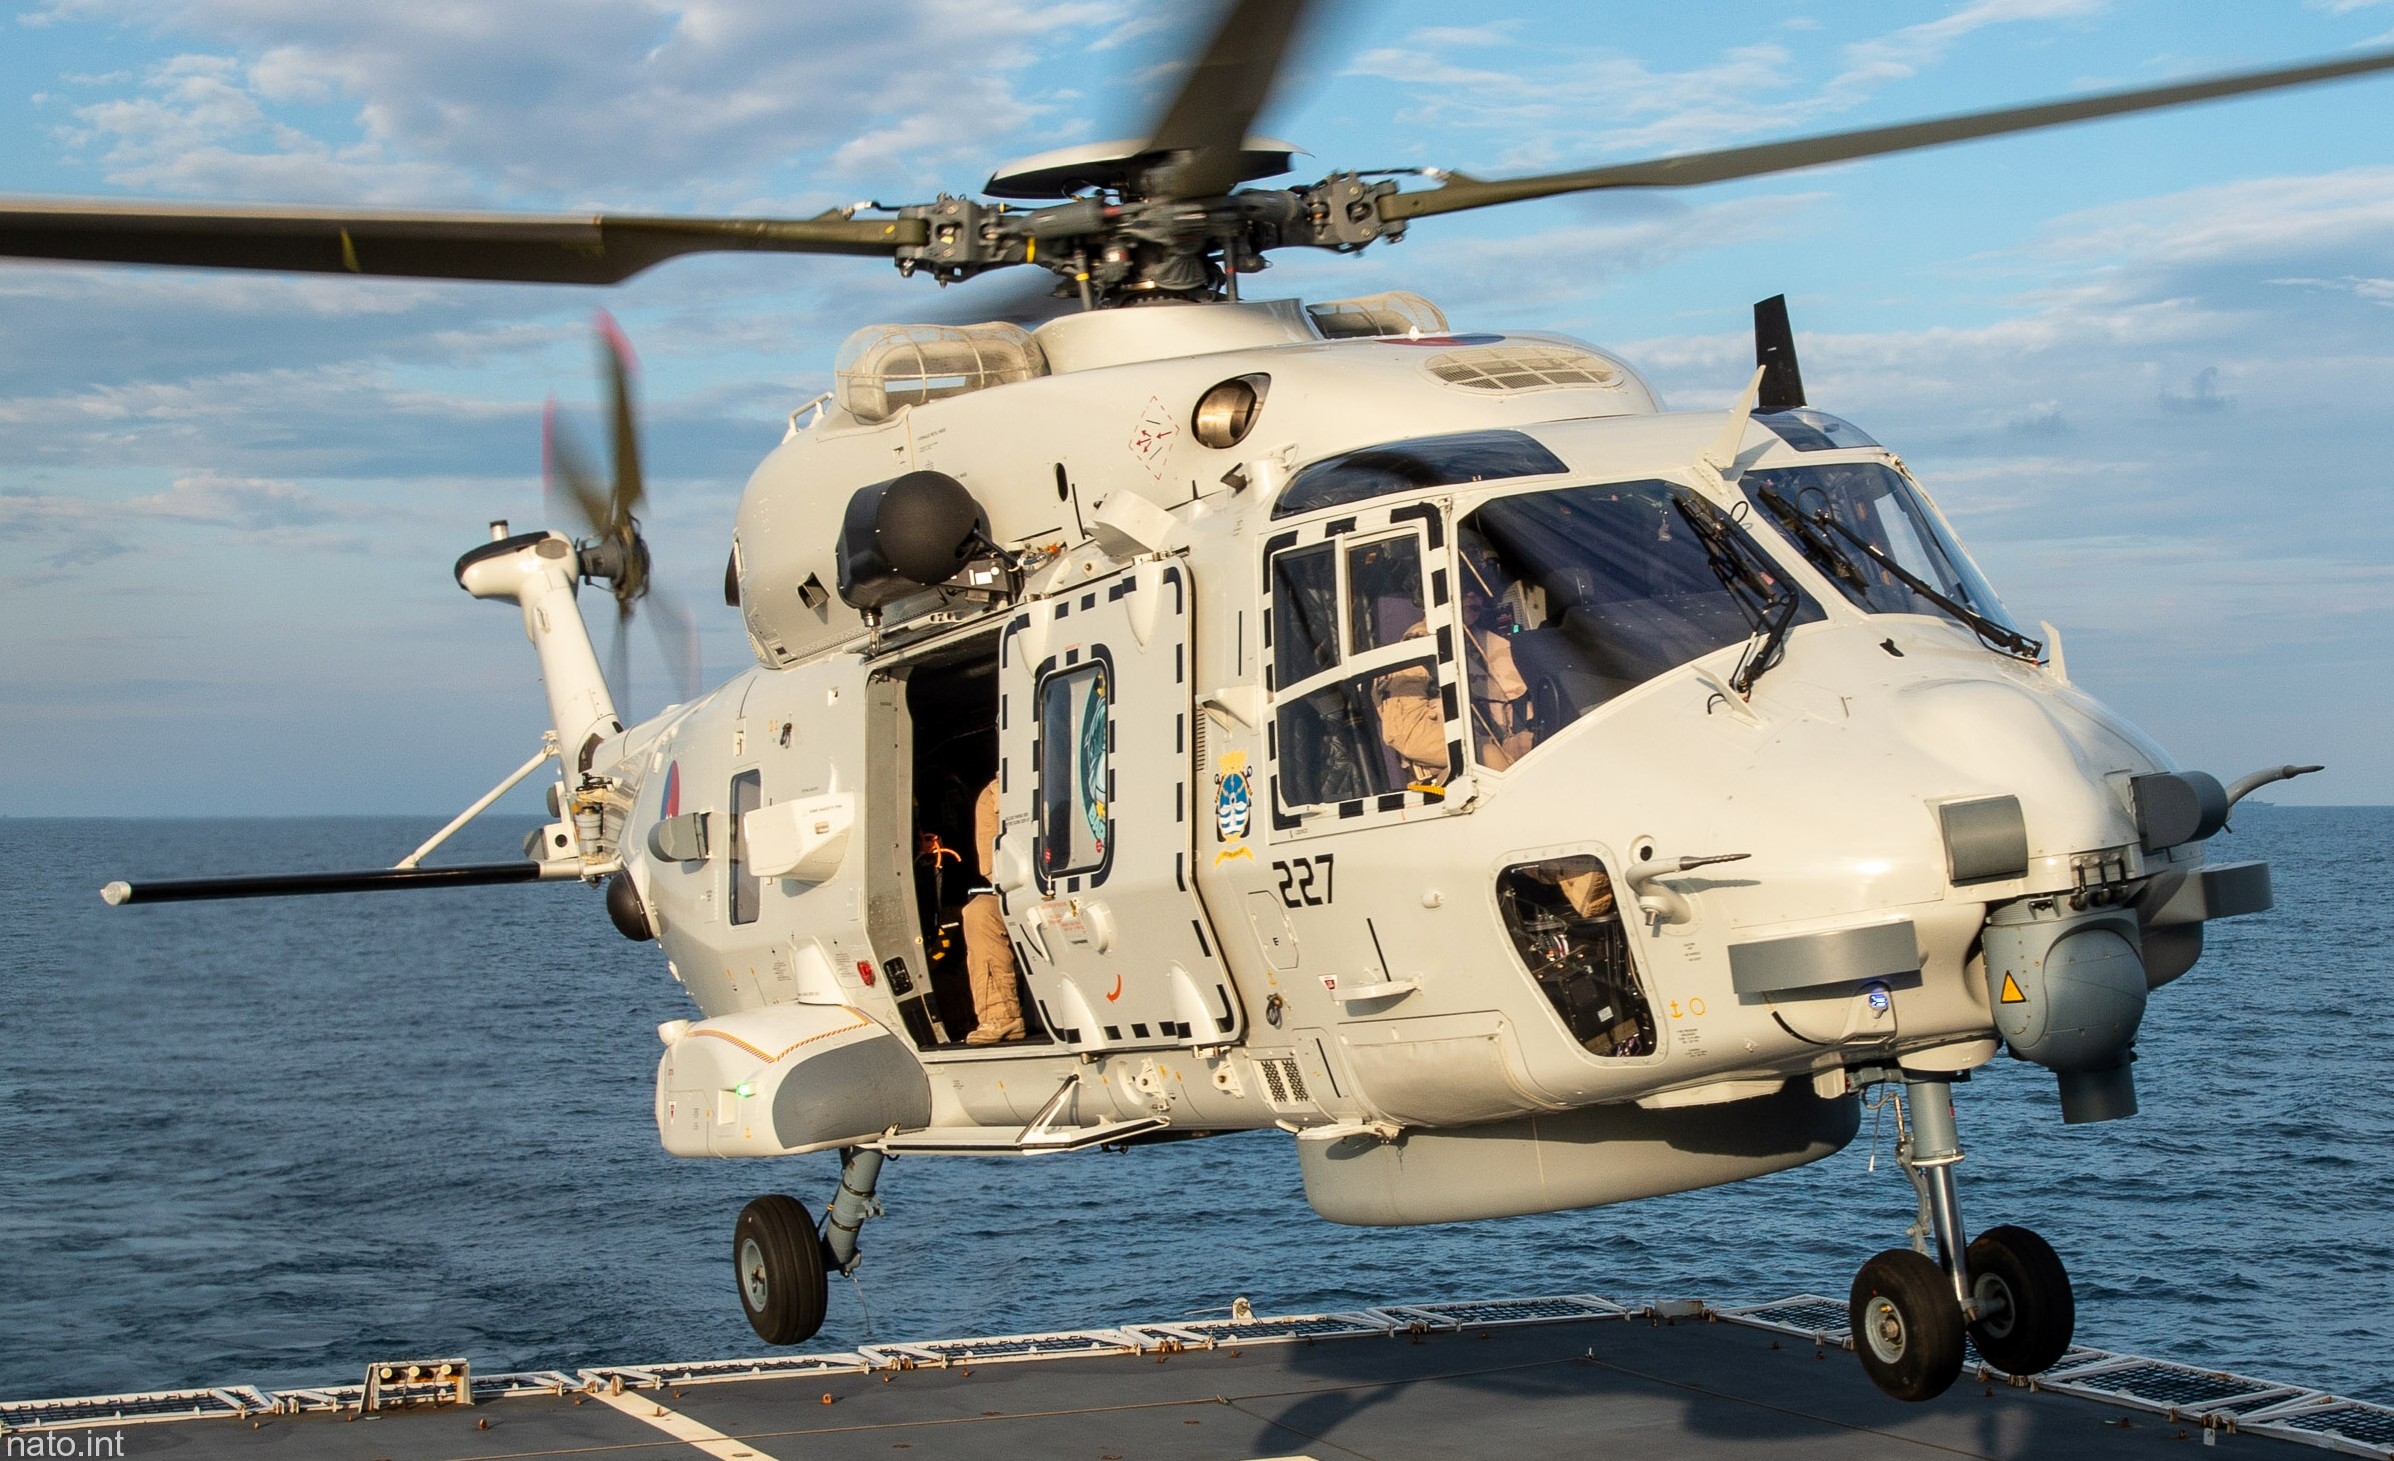 nh90 nfh helicopter royal netherlands navy koninklijke marine n-227 03